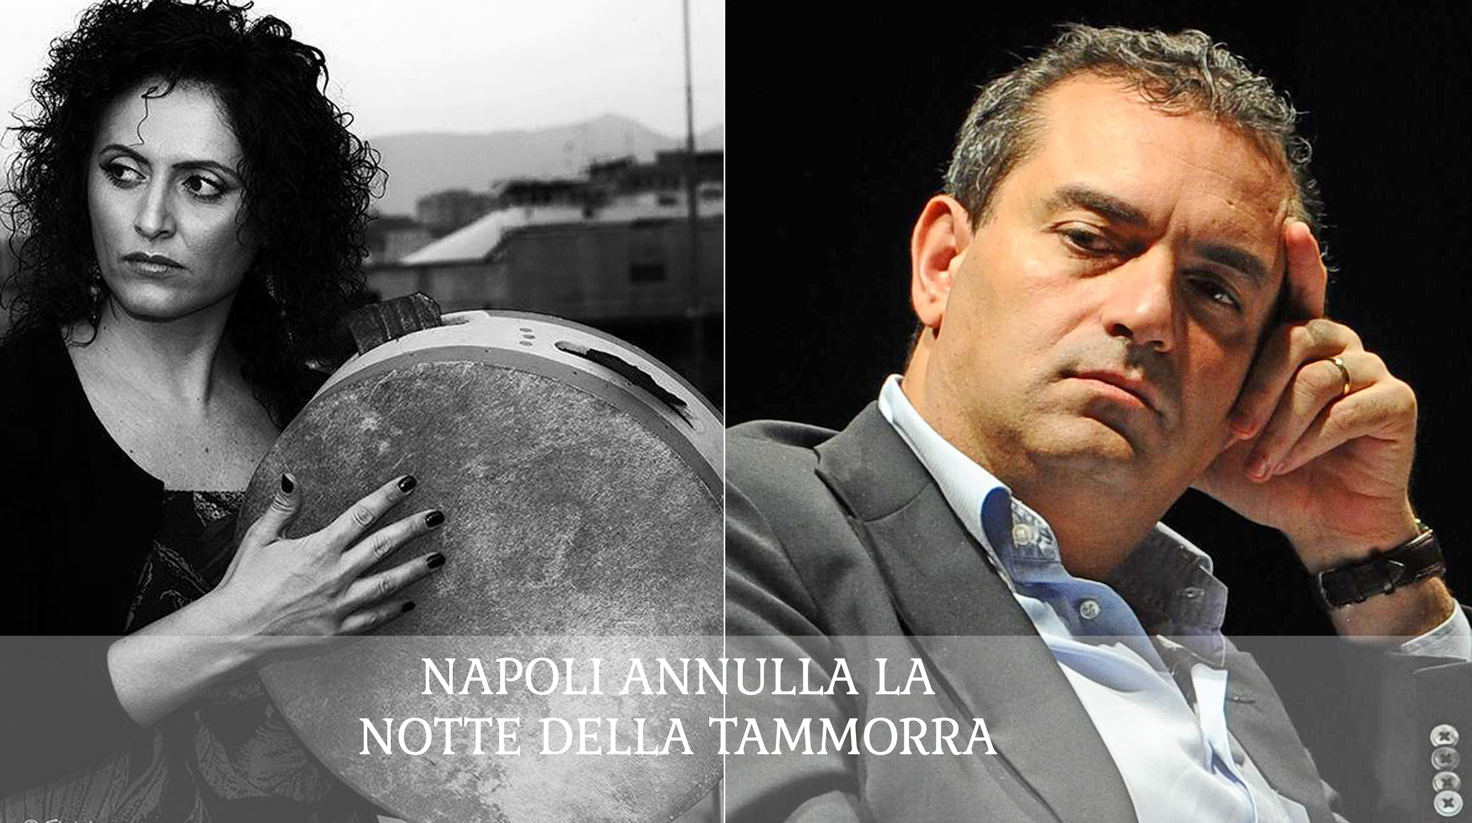 UN FERRAGOSTO NERO - A Tammurriata non si fa  Napoli - Genova Il bel gesto di vicinanza  e non solo